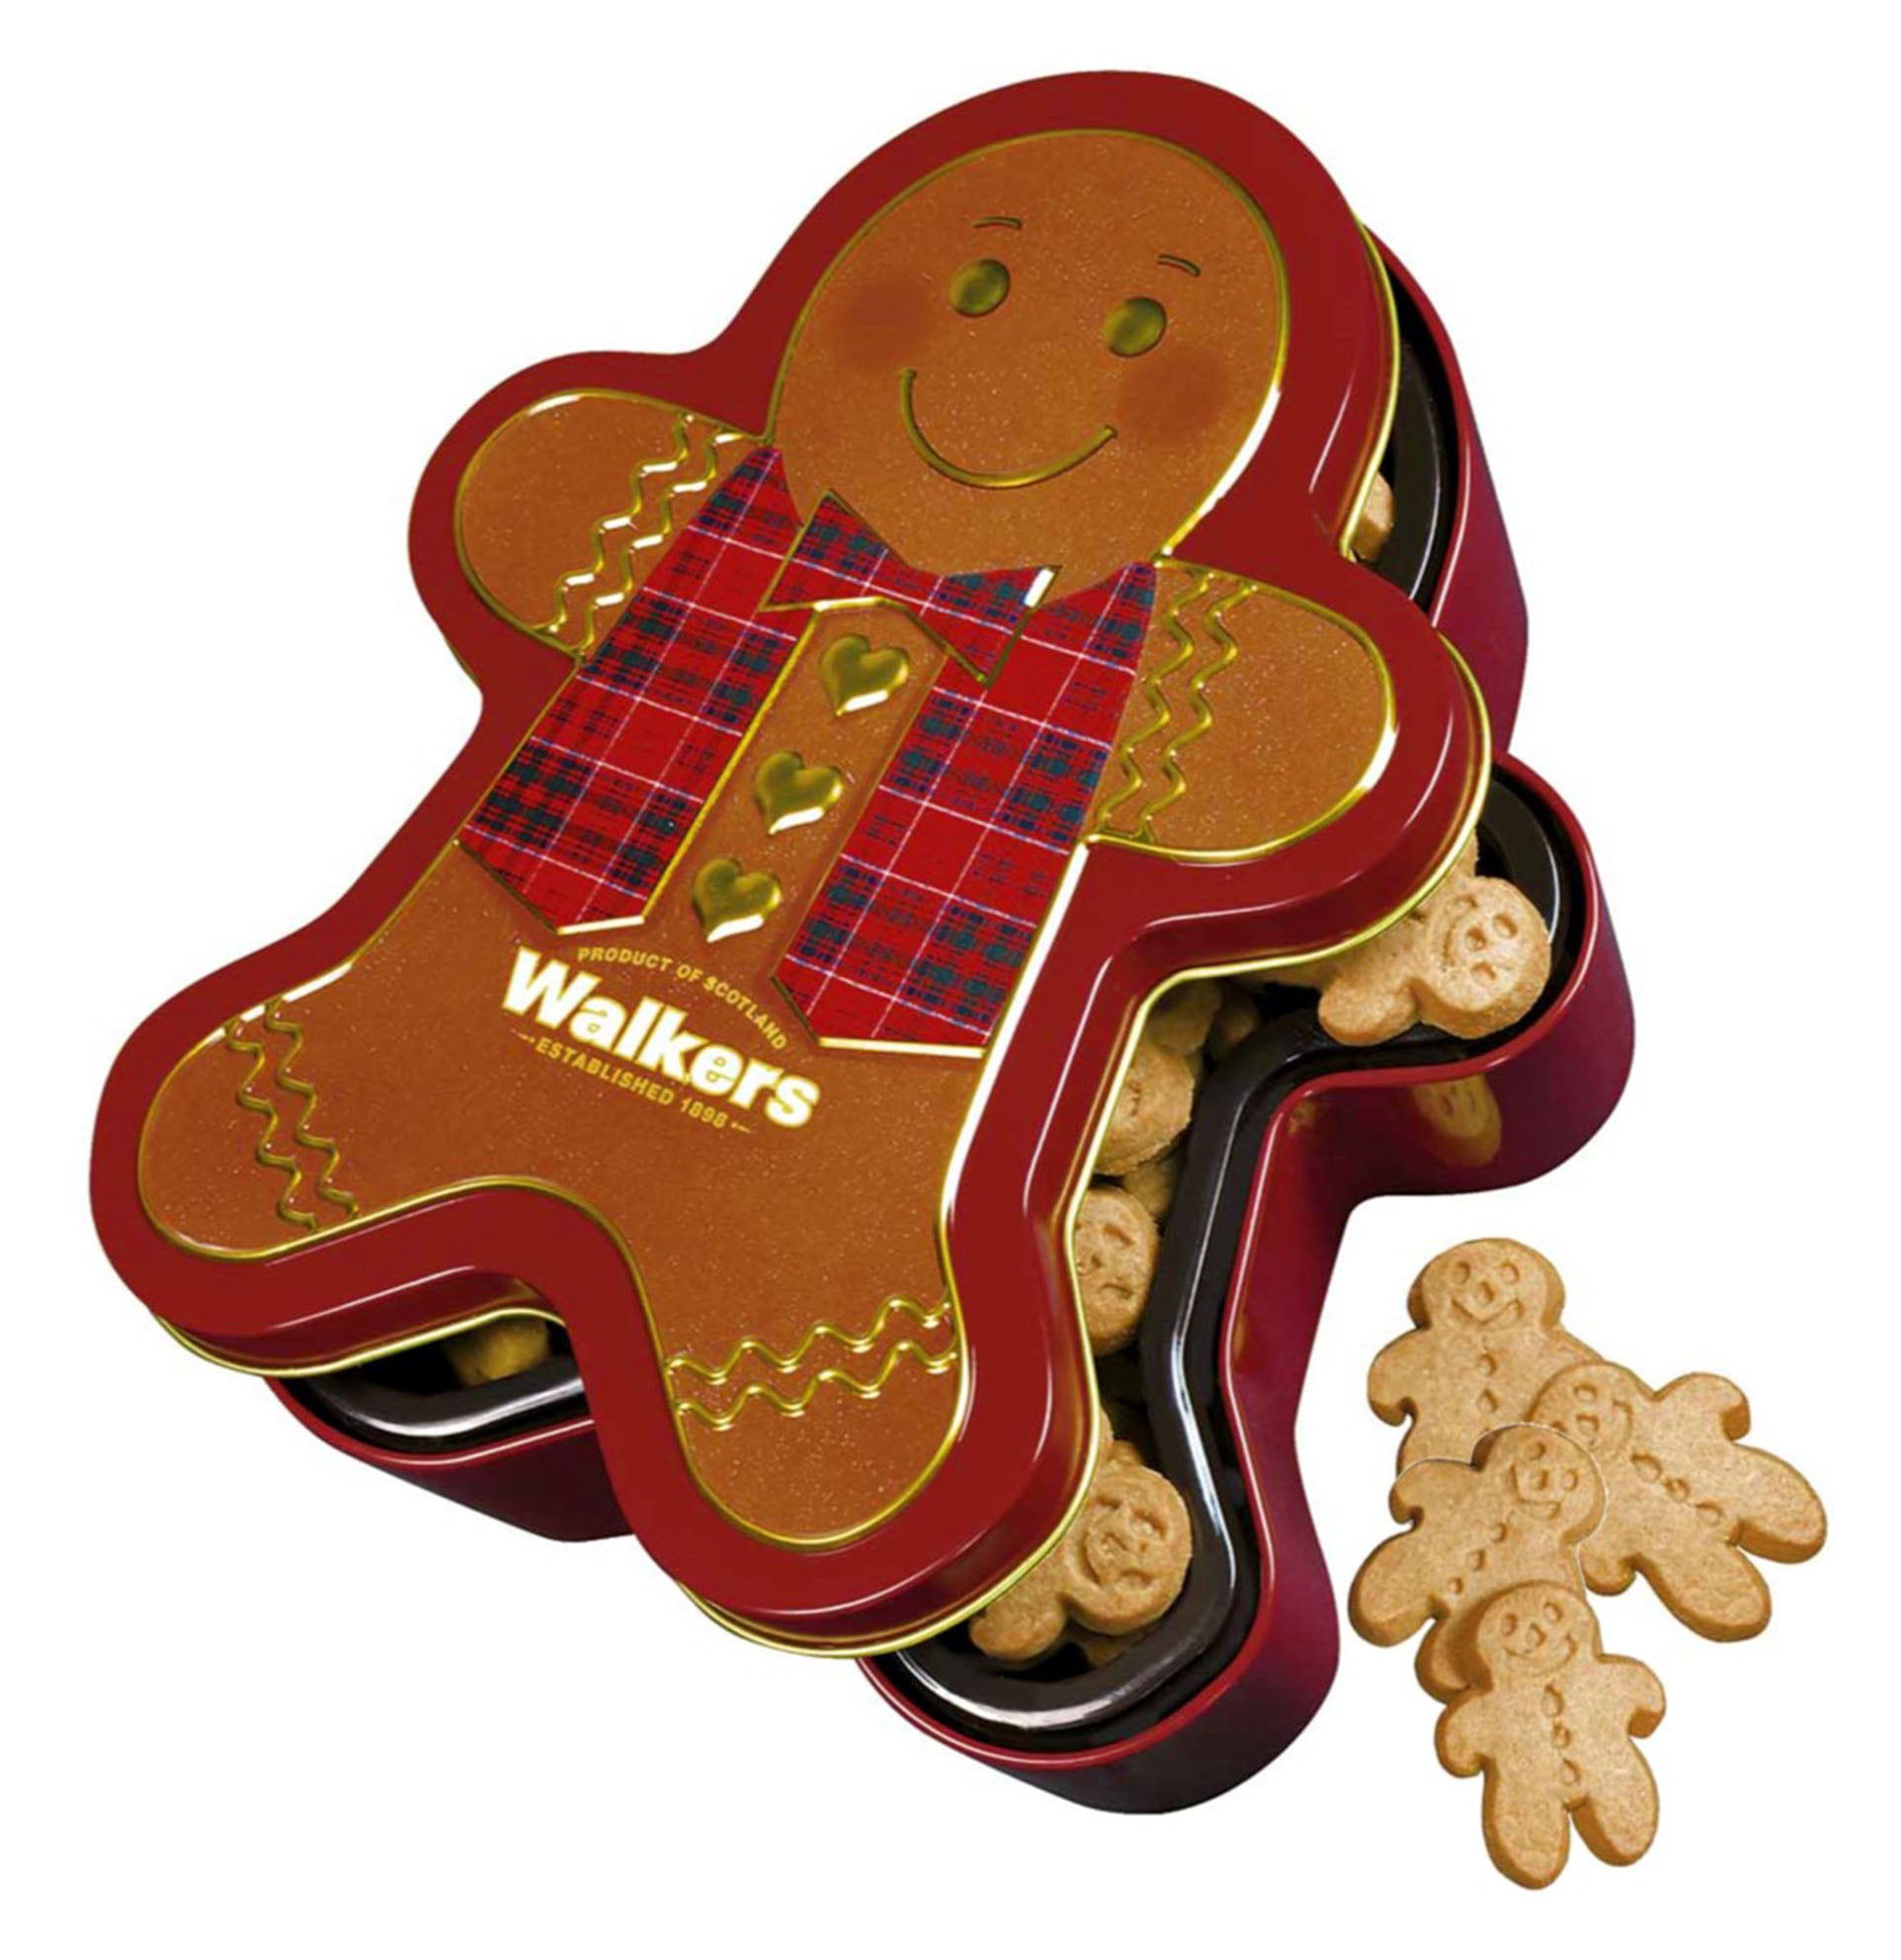 Walkers Shortbread Mini Gingerbread Men Biscuits Gift Tin 300 G 10 6 Oz Walmart Com Walmart Com